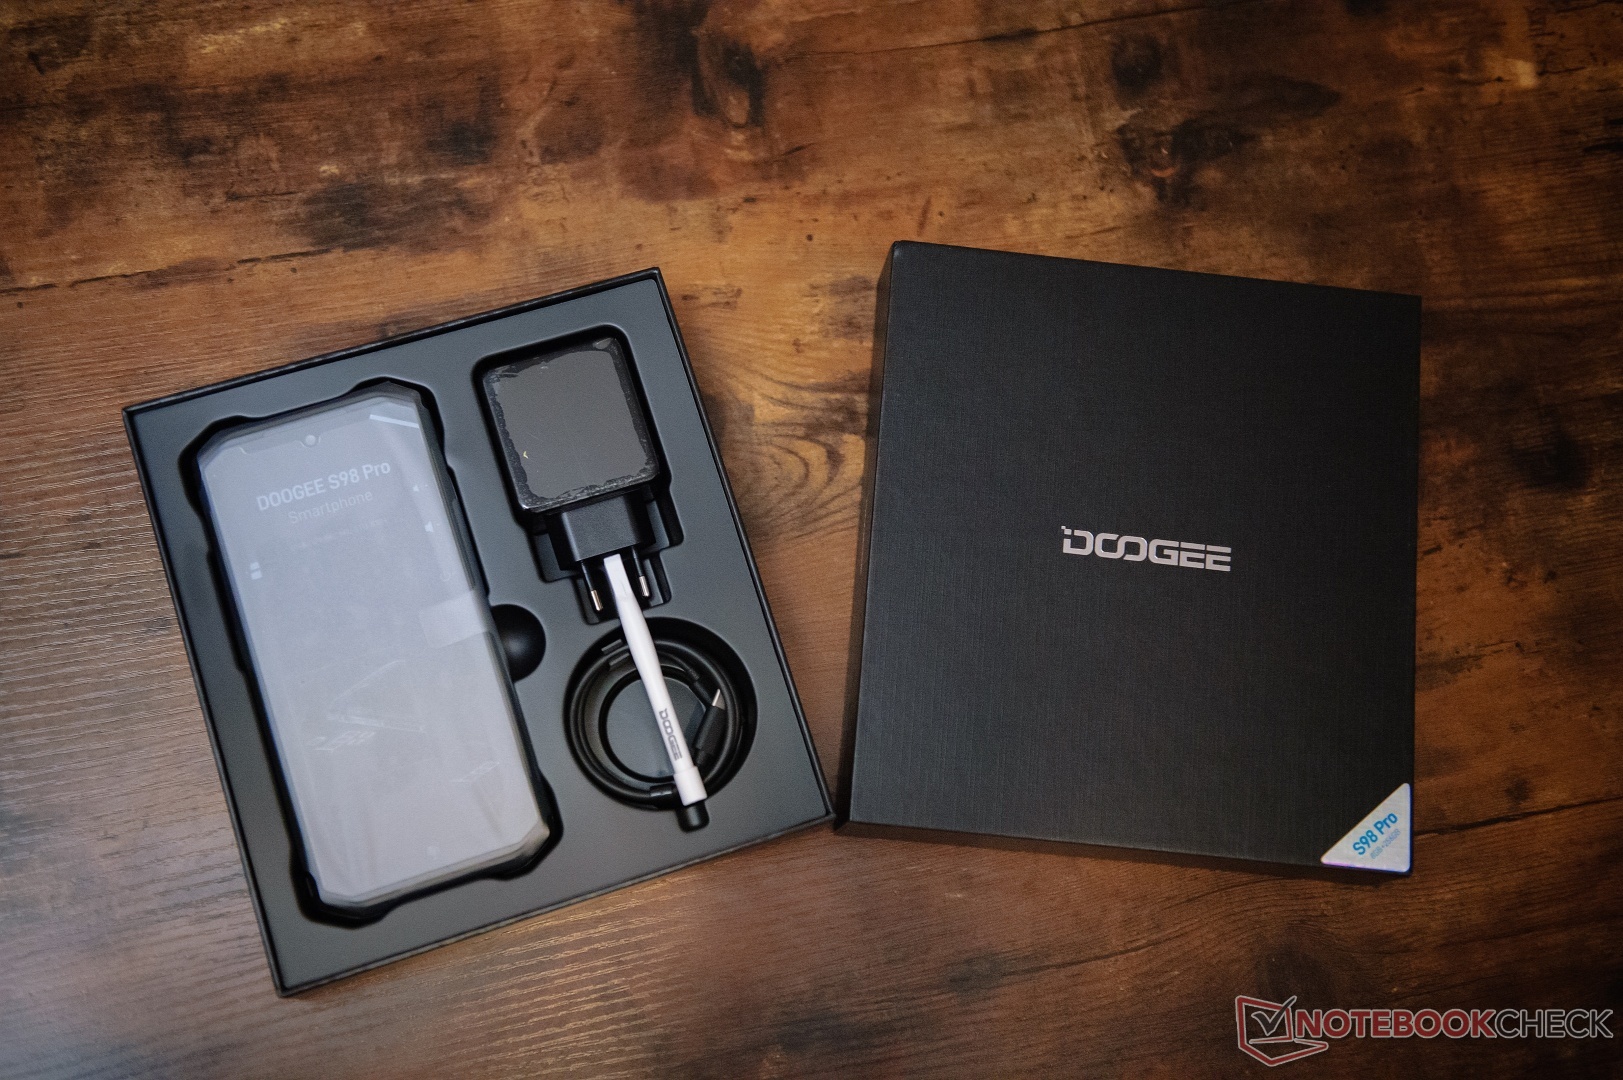 Doogee S98 Pro, probando el nuevo móvil con imágenes térmicas y